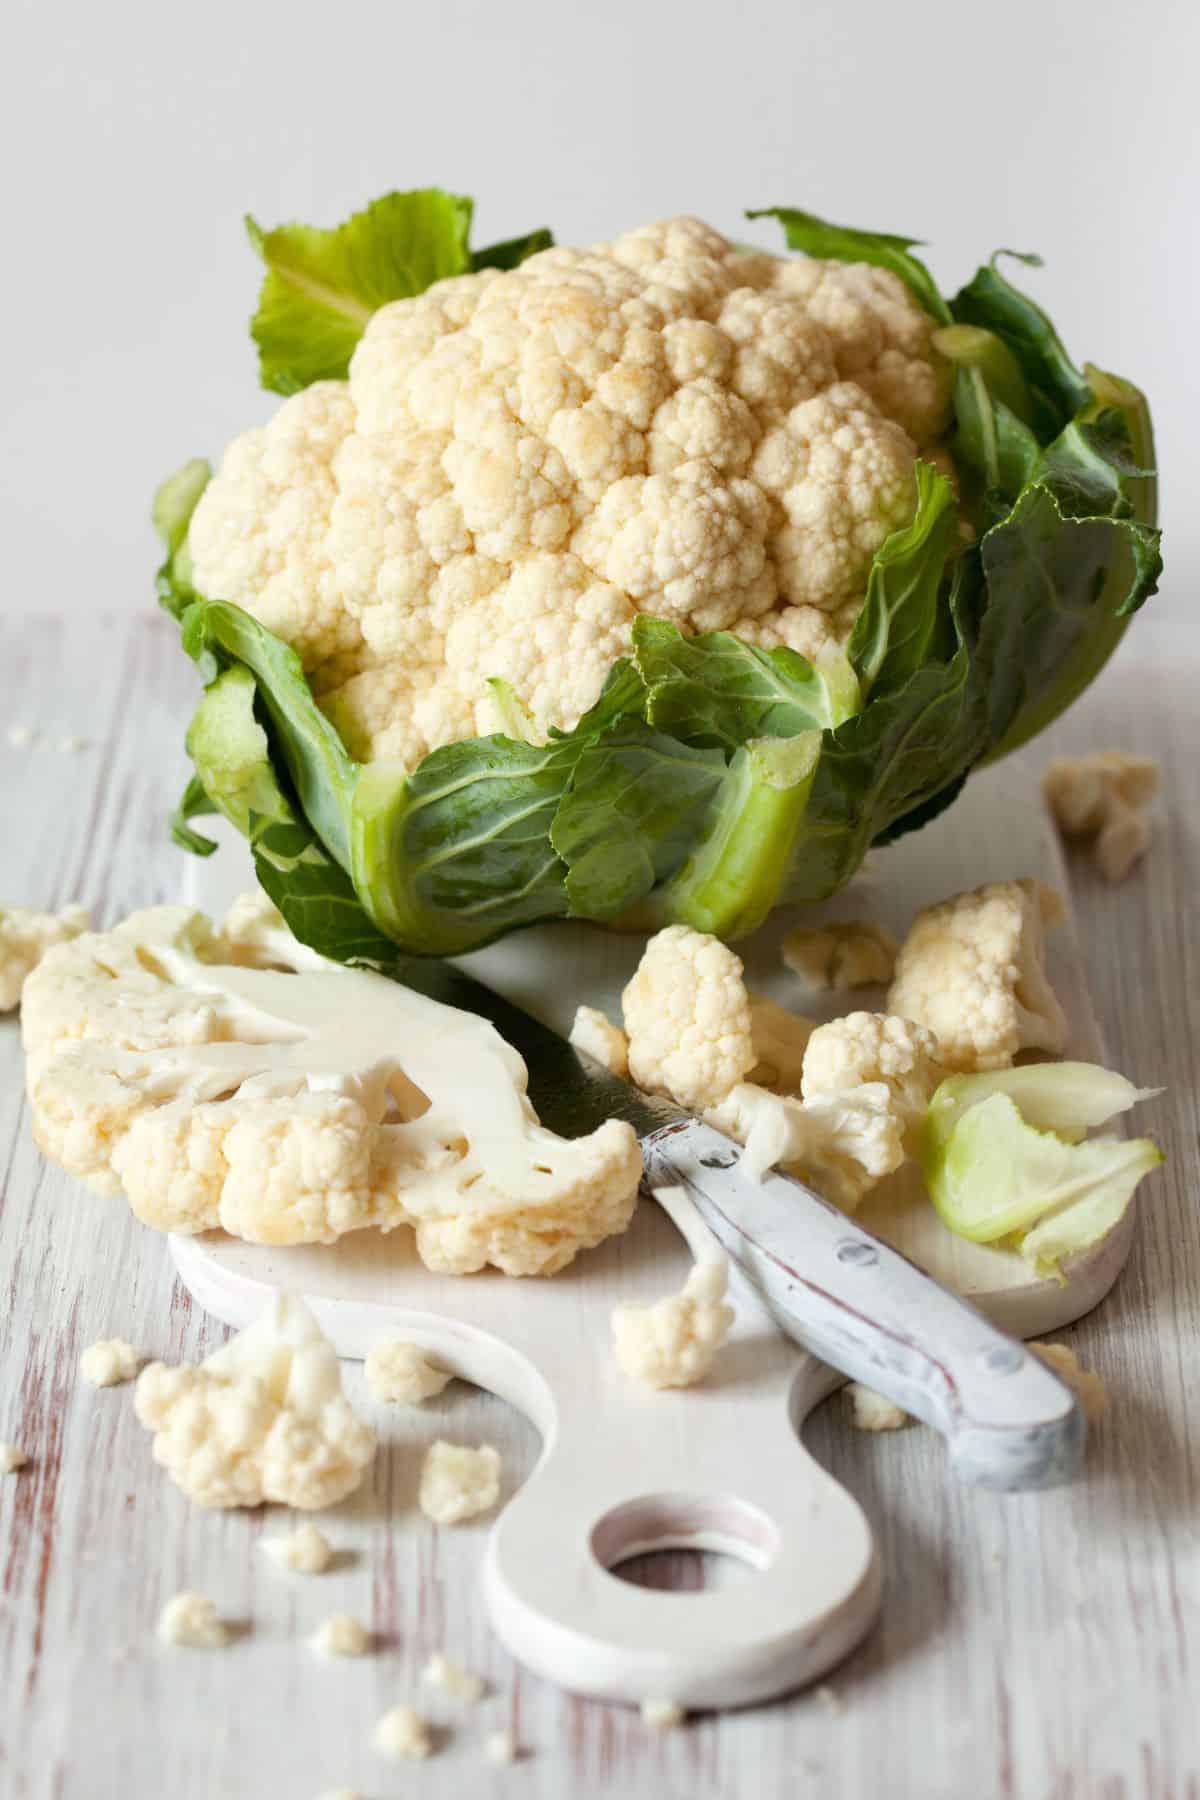 Cauliflower head with cutting board and sliced cauliflower.